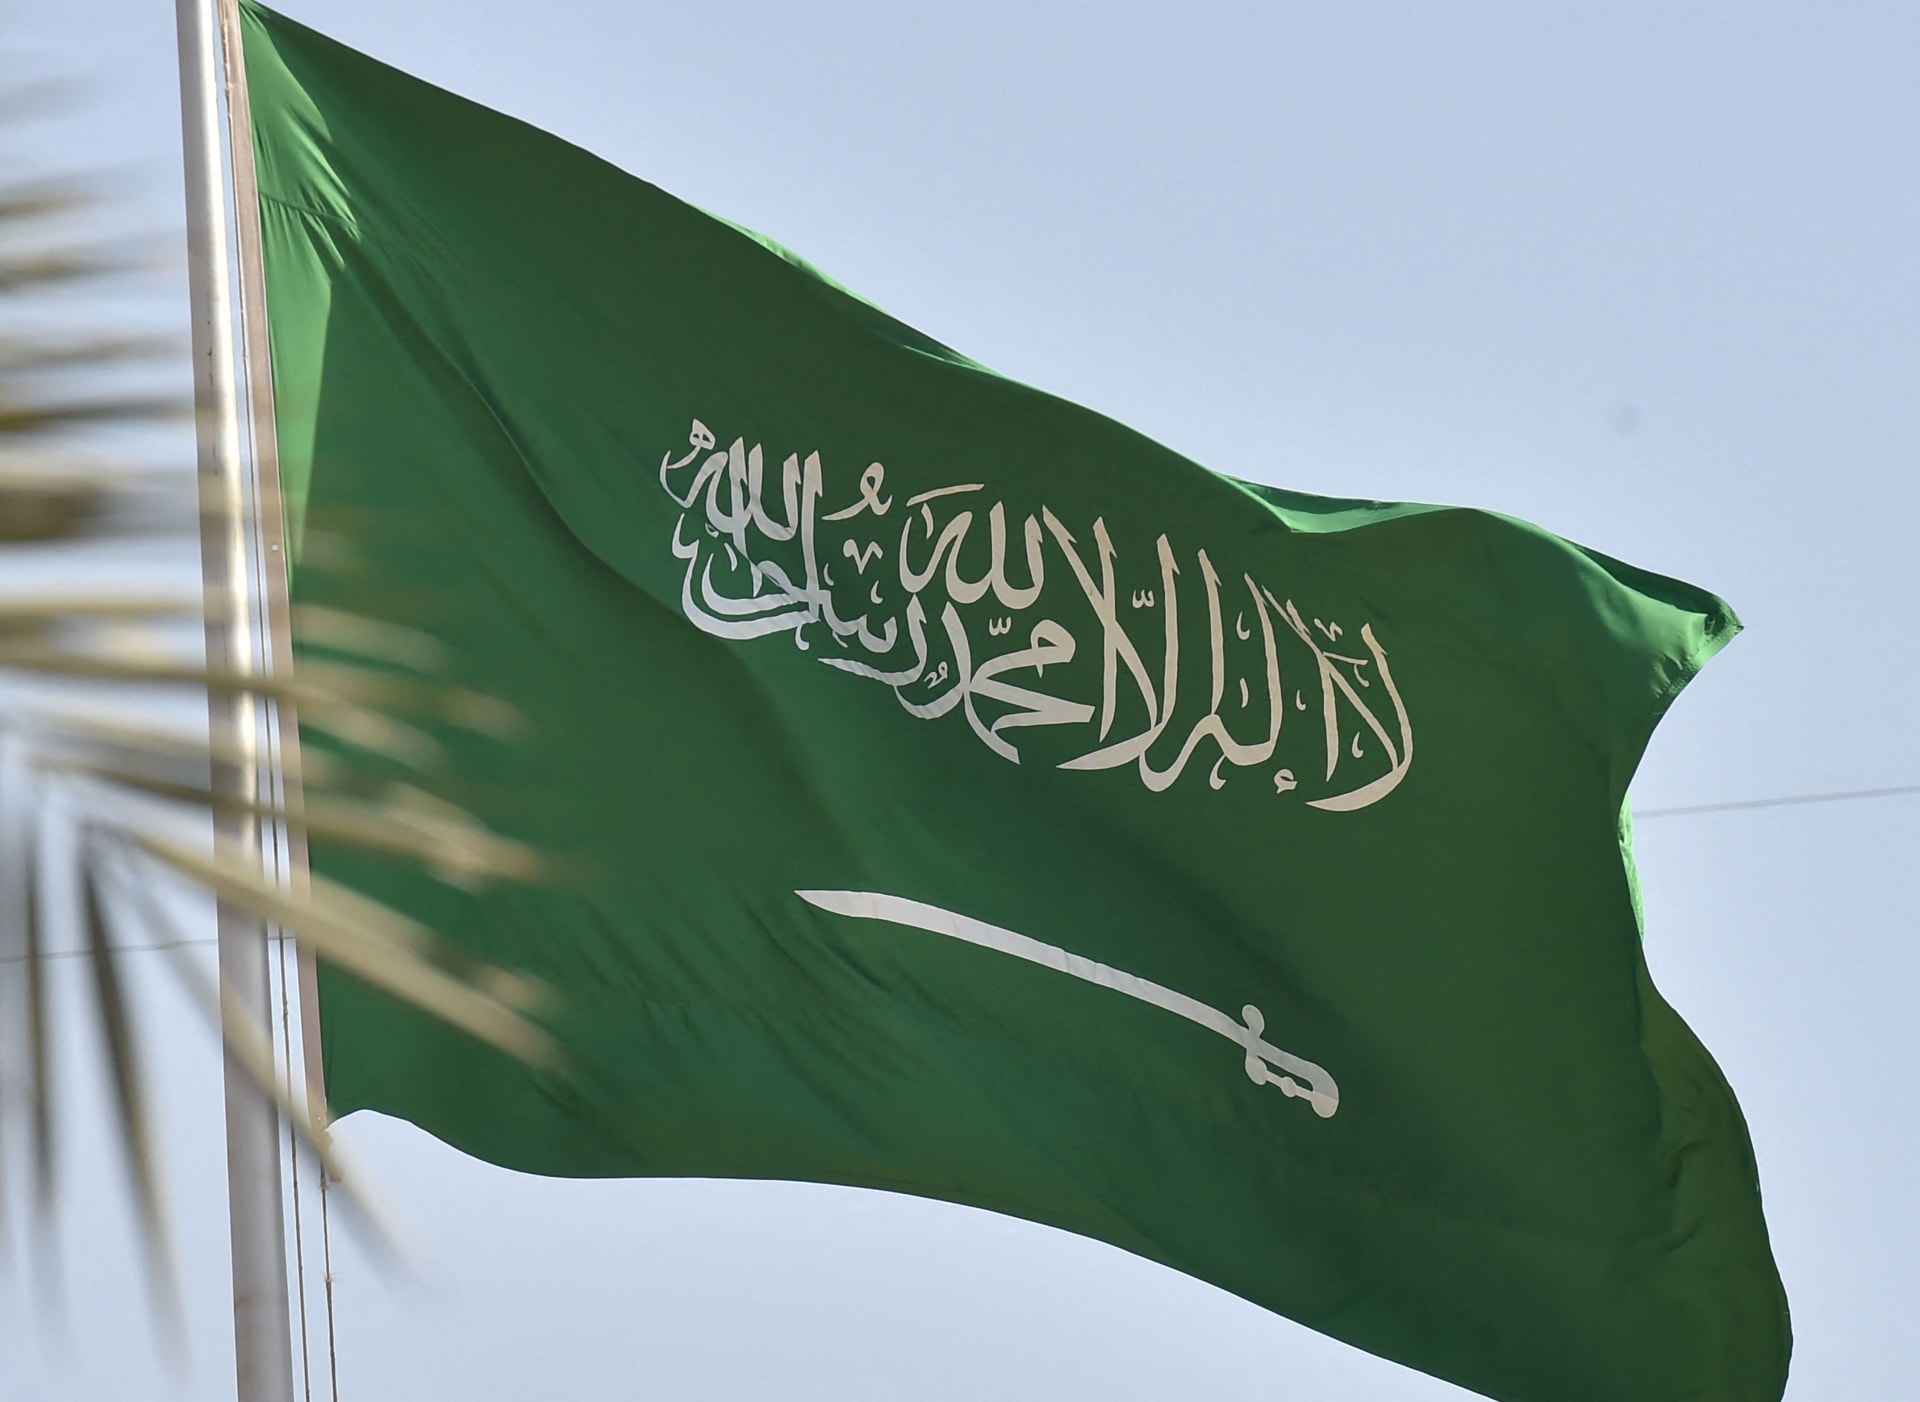 السعودية تعلن عقد قمة عربية إسلامية "مشتركة غير عادية بشكل استثنائي" السبت